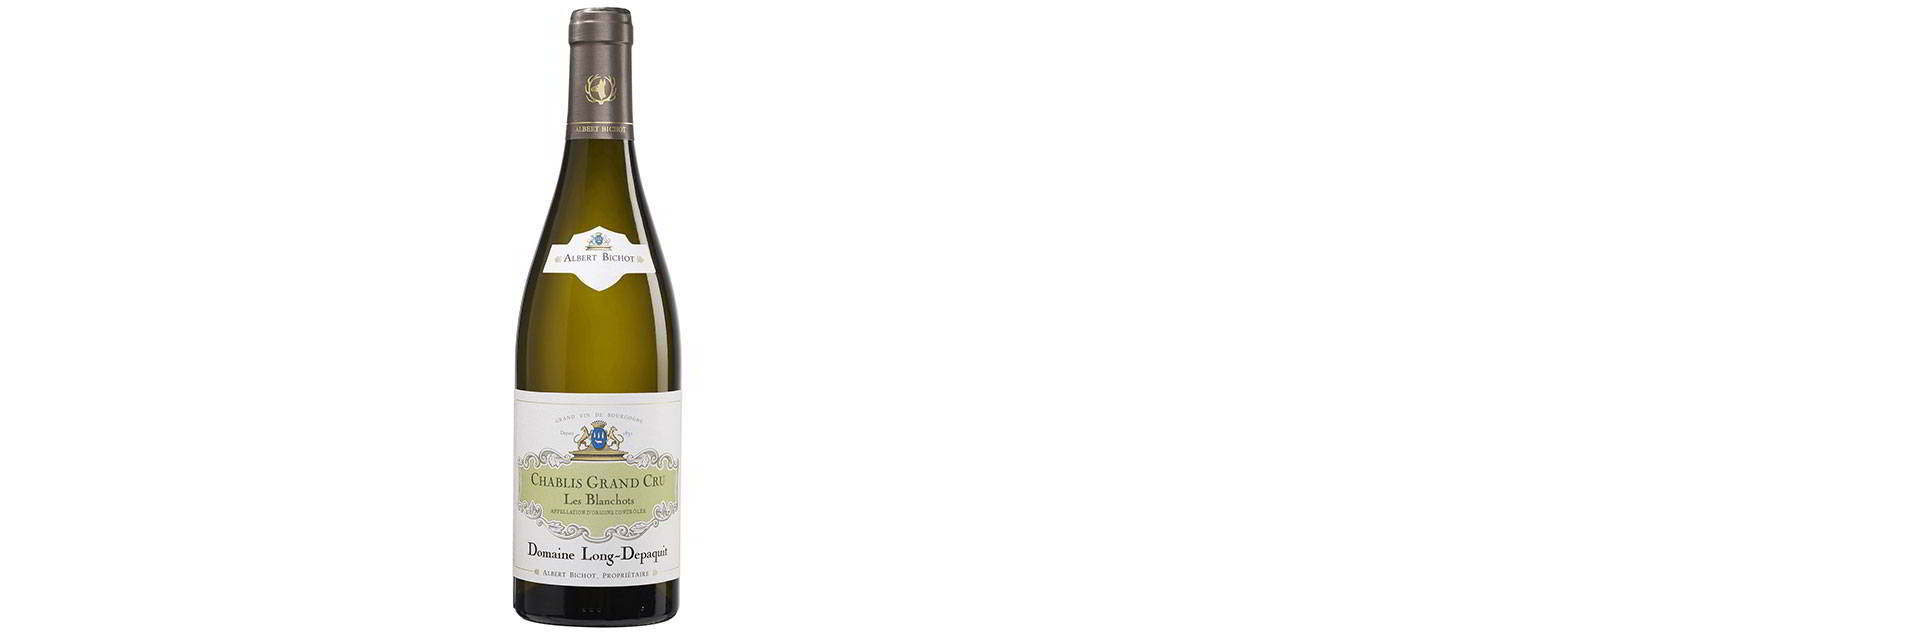 Rượu vang Chablis Grand Cru 'Les Blanchots' Domaine Long-Depaquit